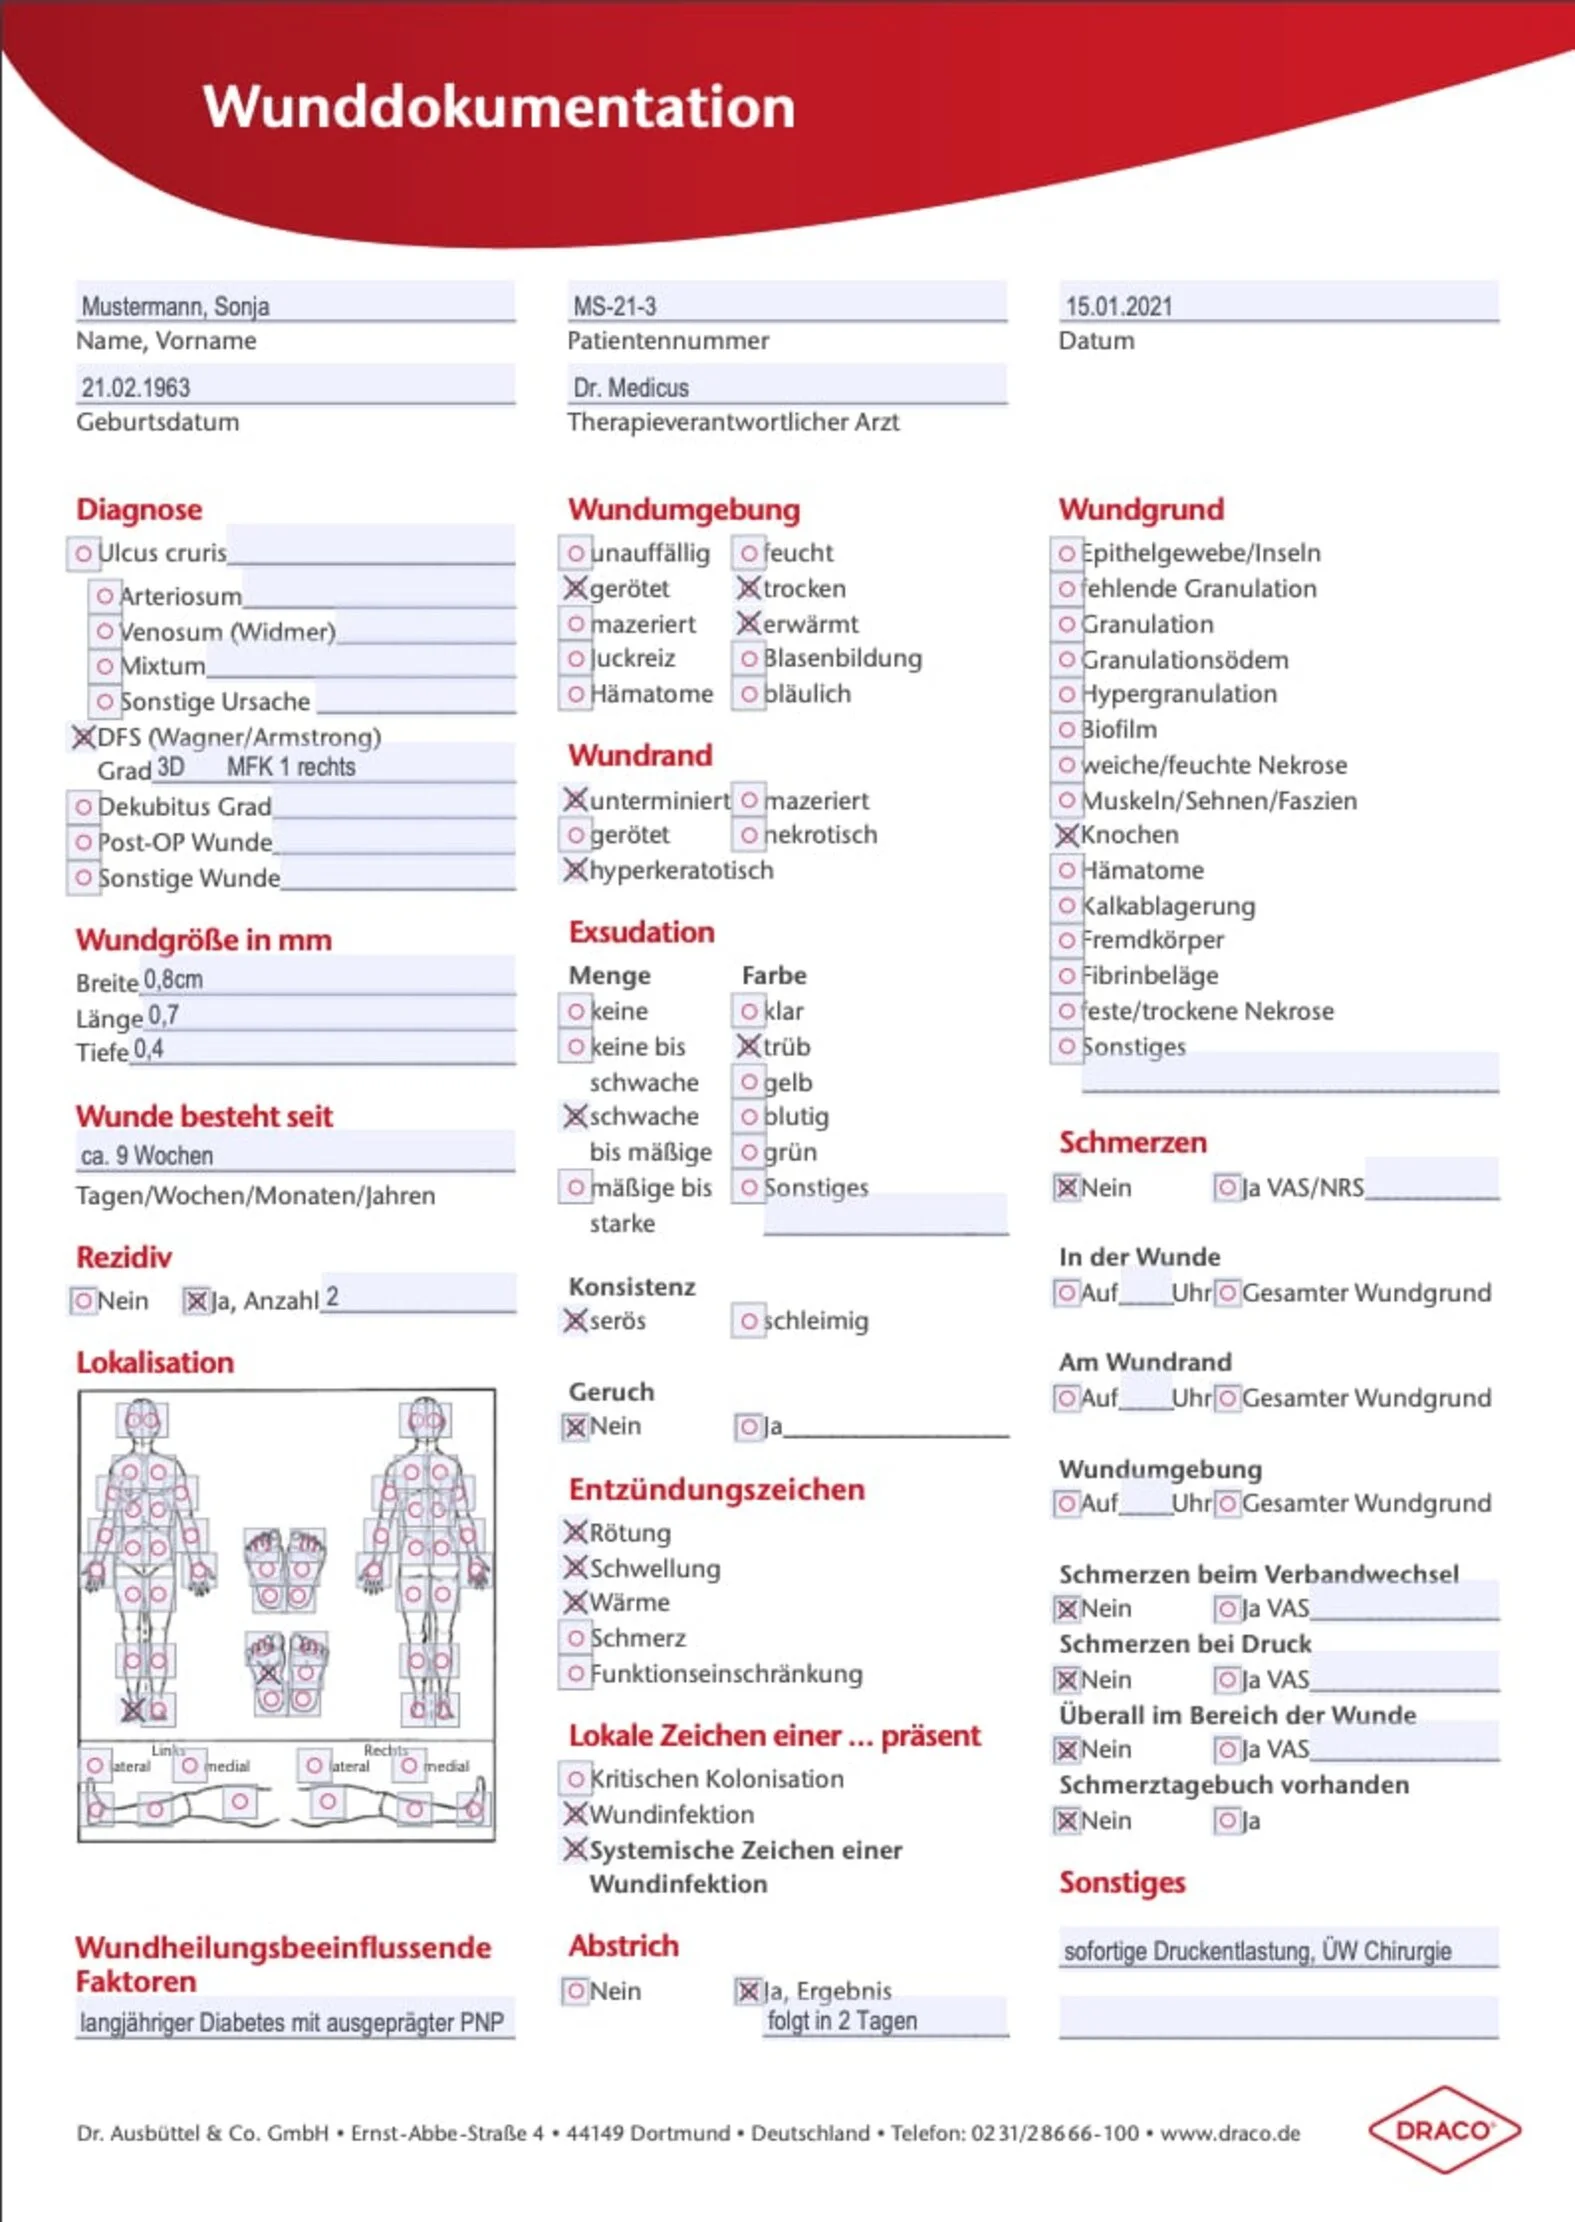 Ausgefüllter Wunddokumentationsbogen zur abgebildeten Wunde, Wundbeschreibung und Kategorisierung